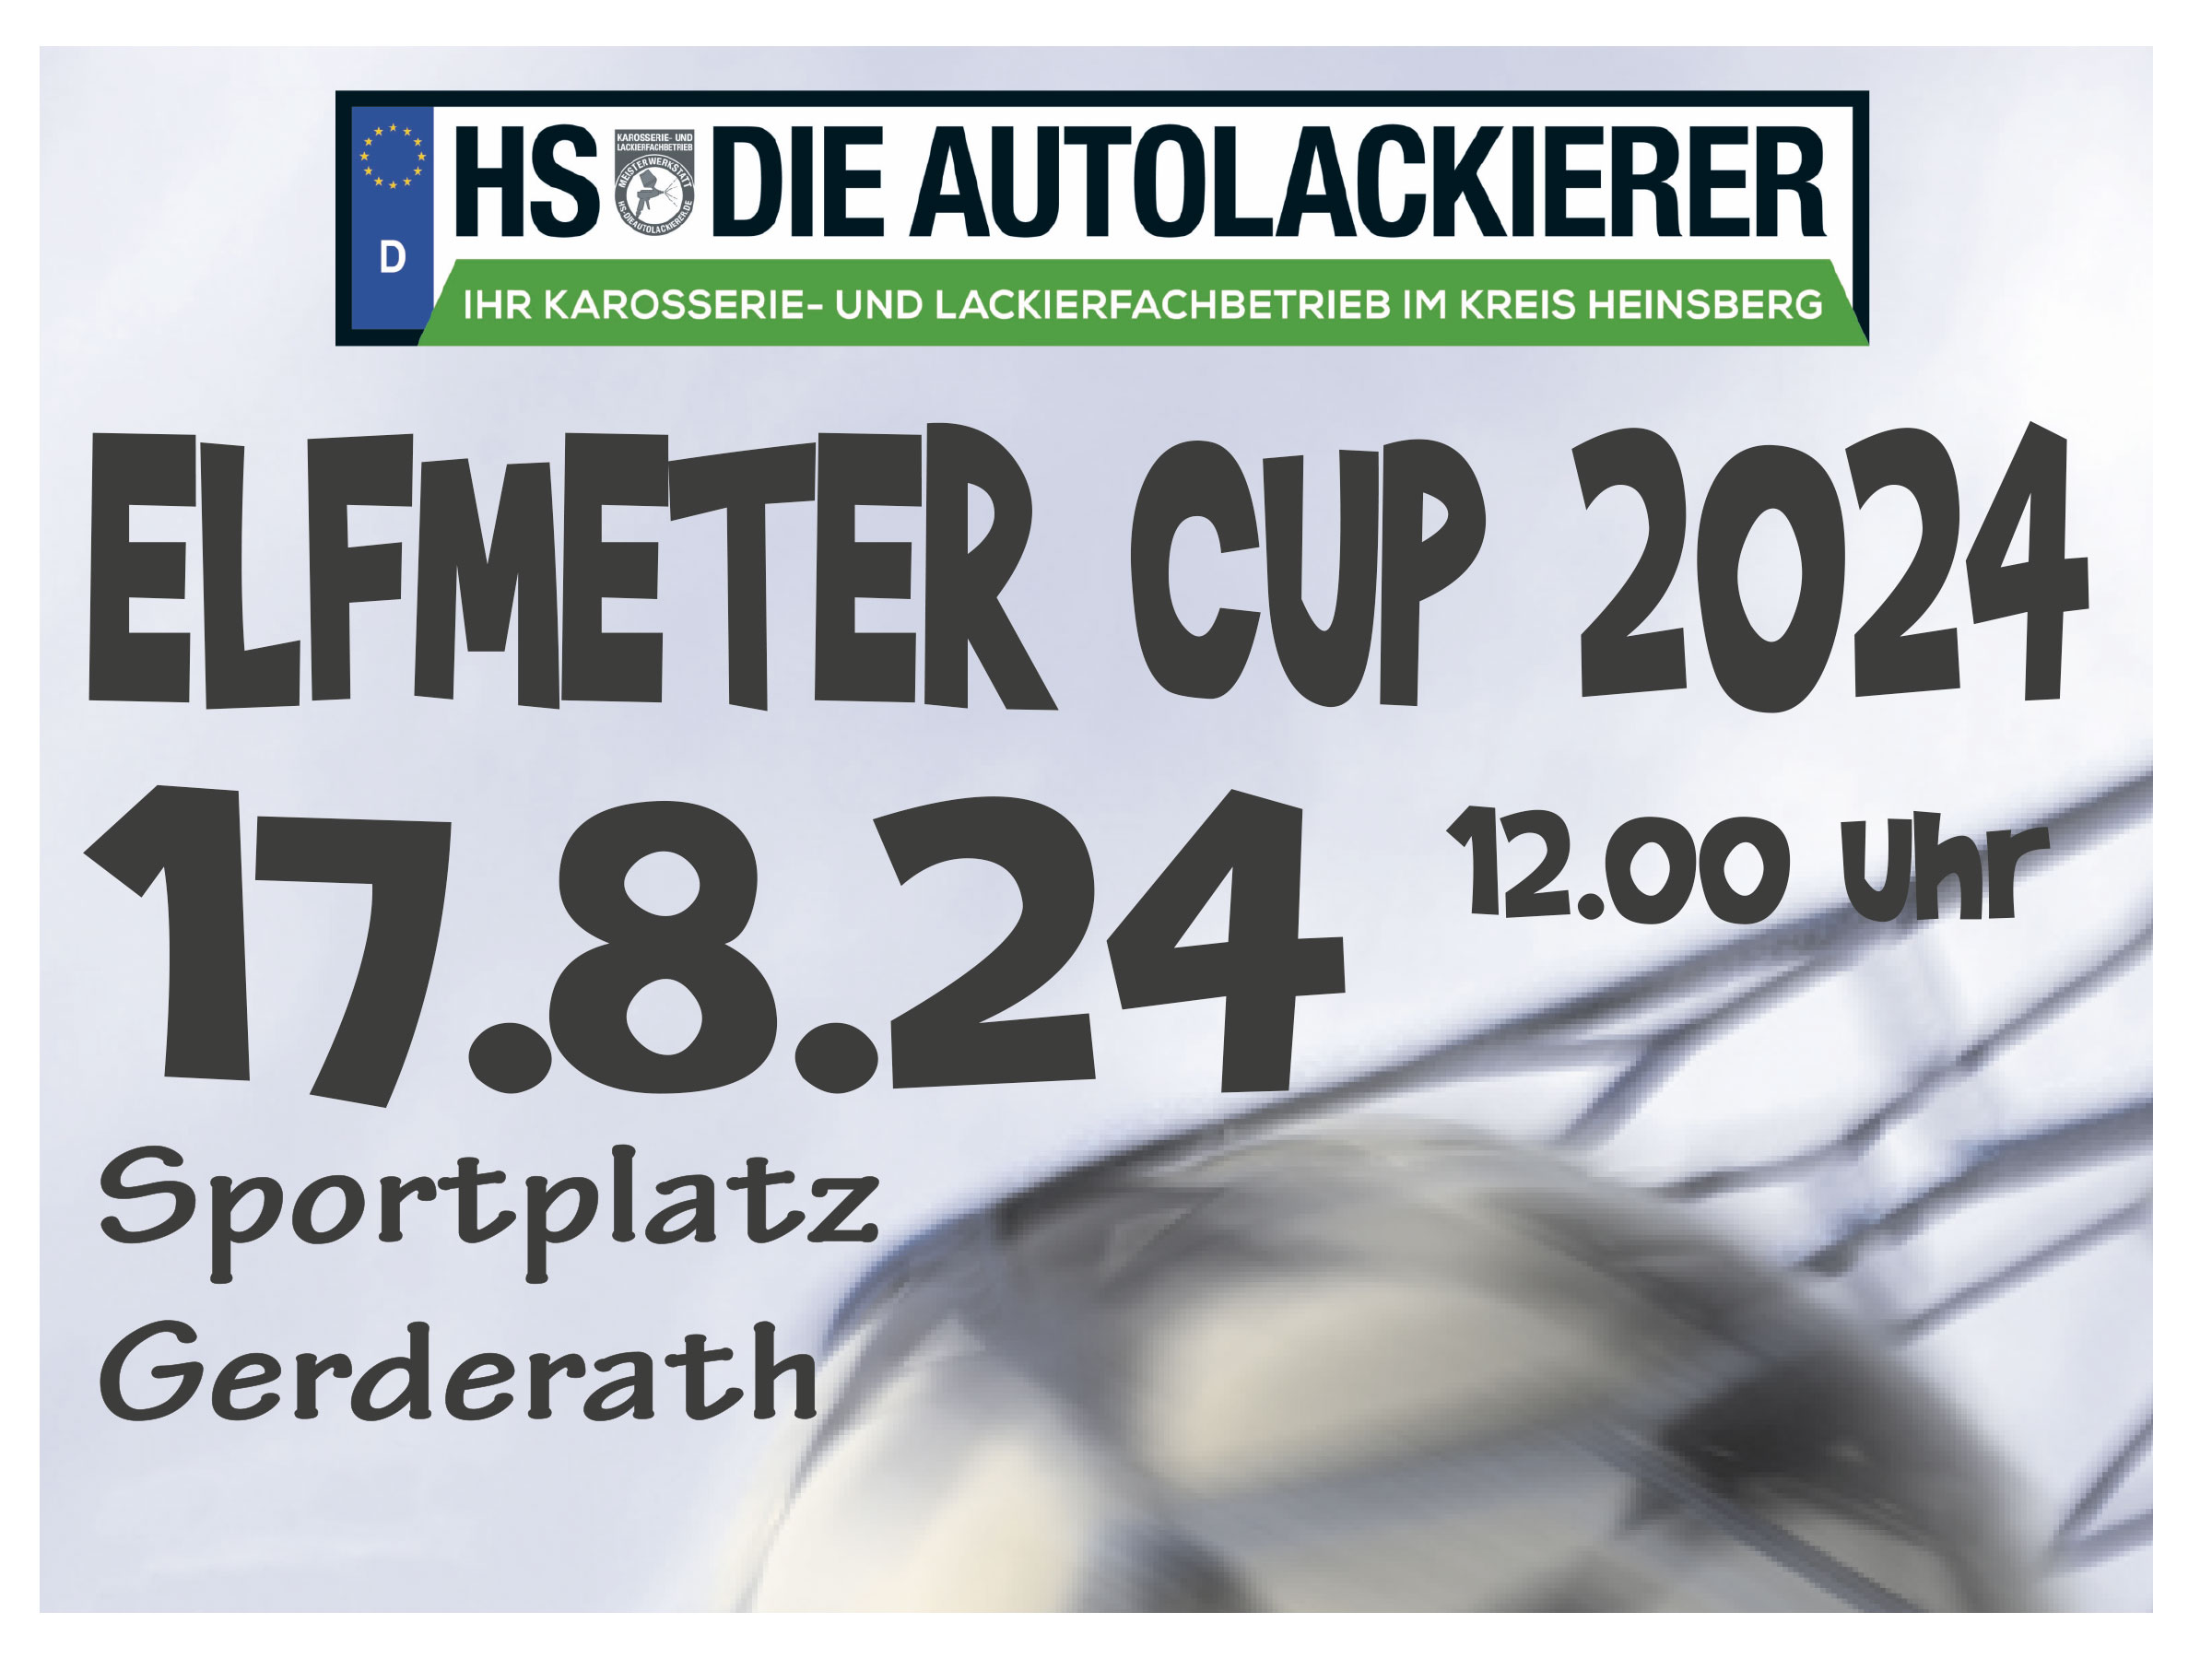 Elfmeter Cup 2024, HS-Die Autolackierer